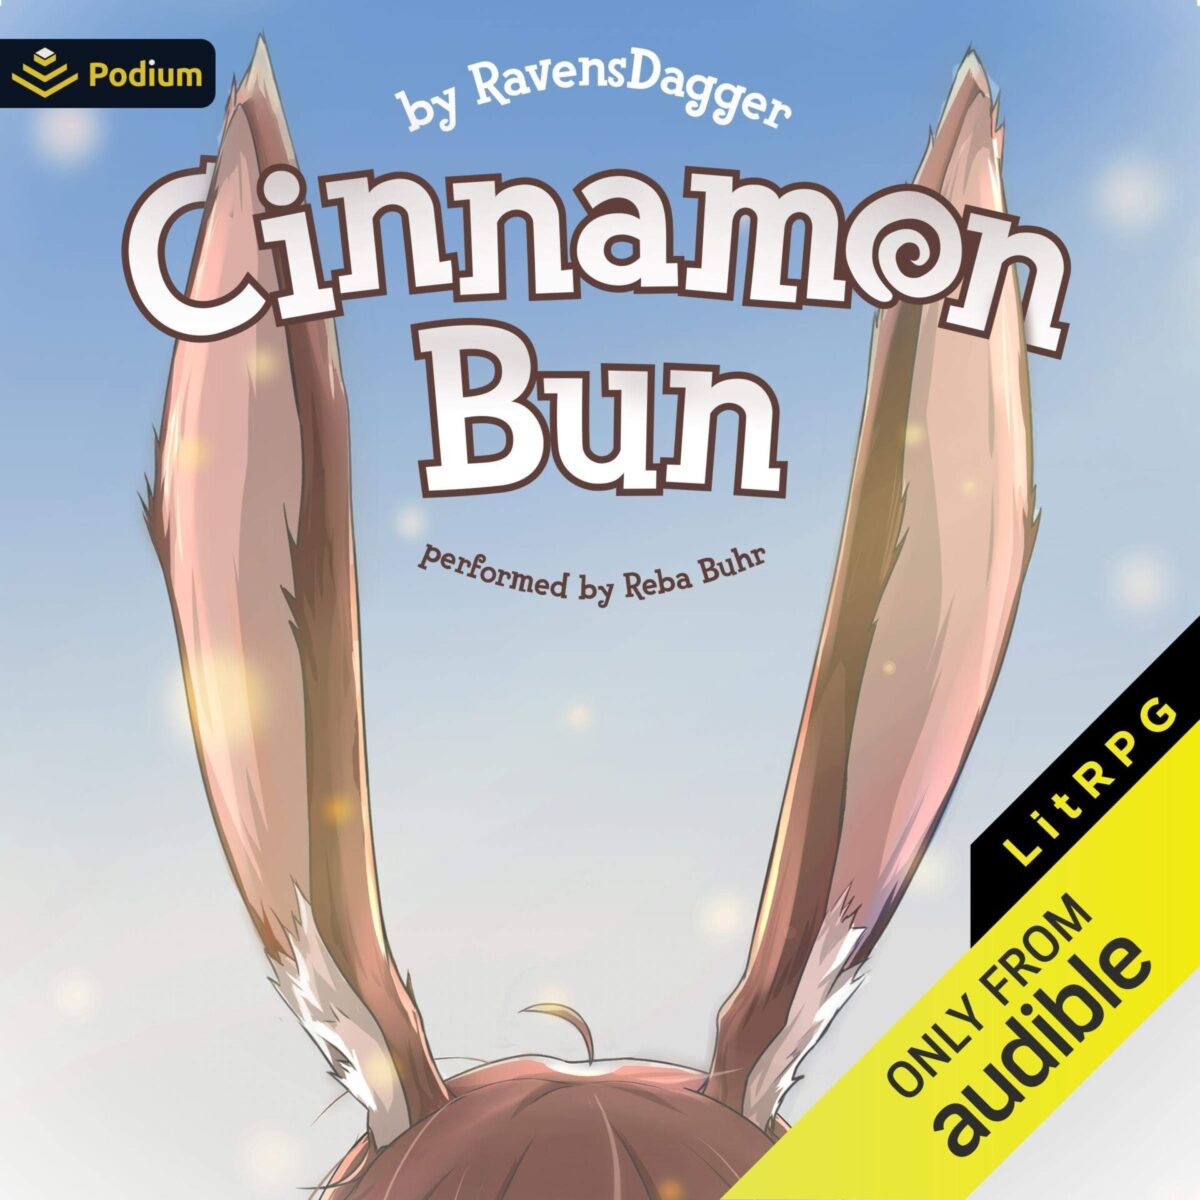 [1] Cinnamon Bun